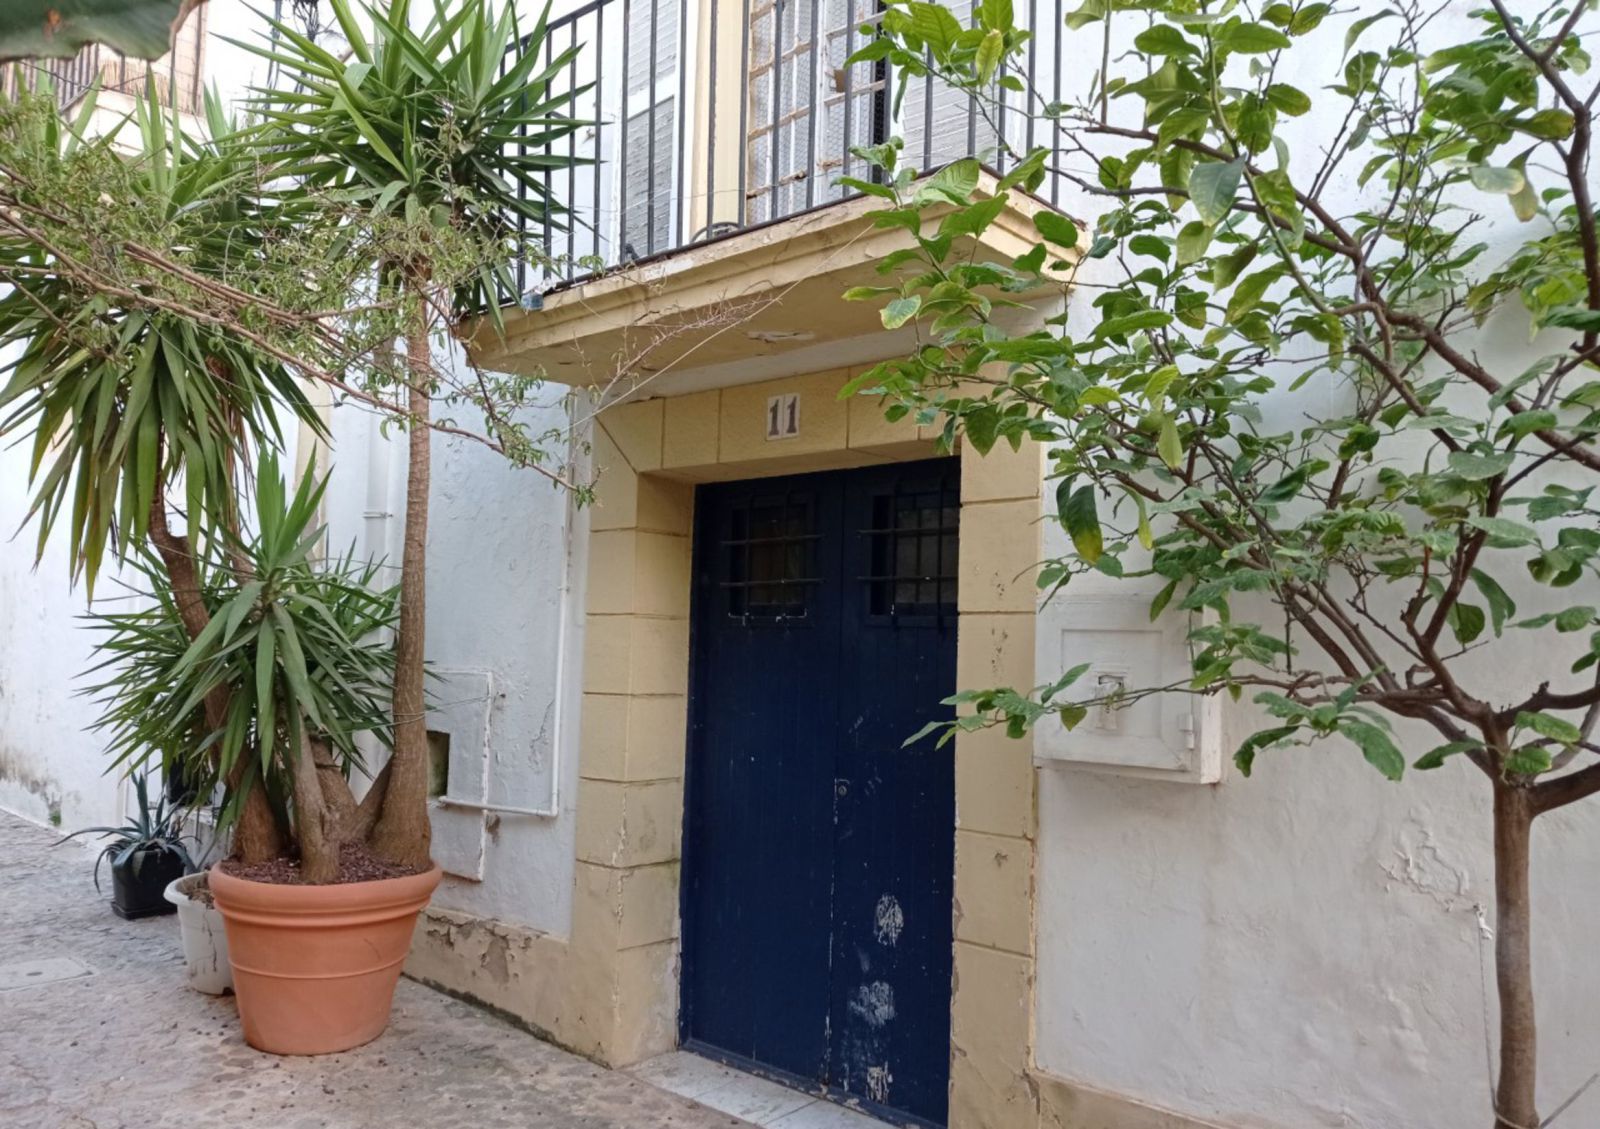 Local del carrer de la Bola número 11 (avui carrer de la Sagrada Família) on s&#039;establí la impremta de Joaquim Cirer Marimon i on es va componder el llibre de Claessens. 